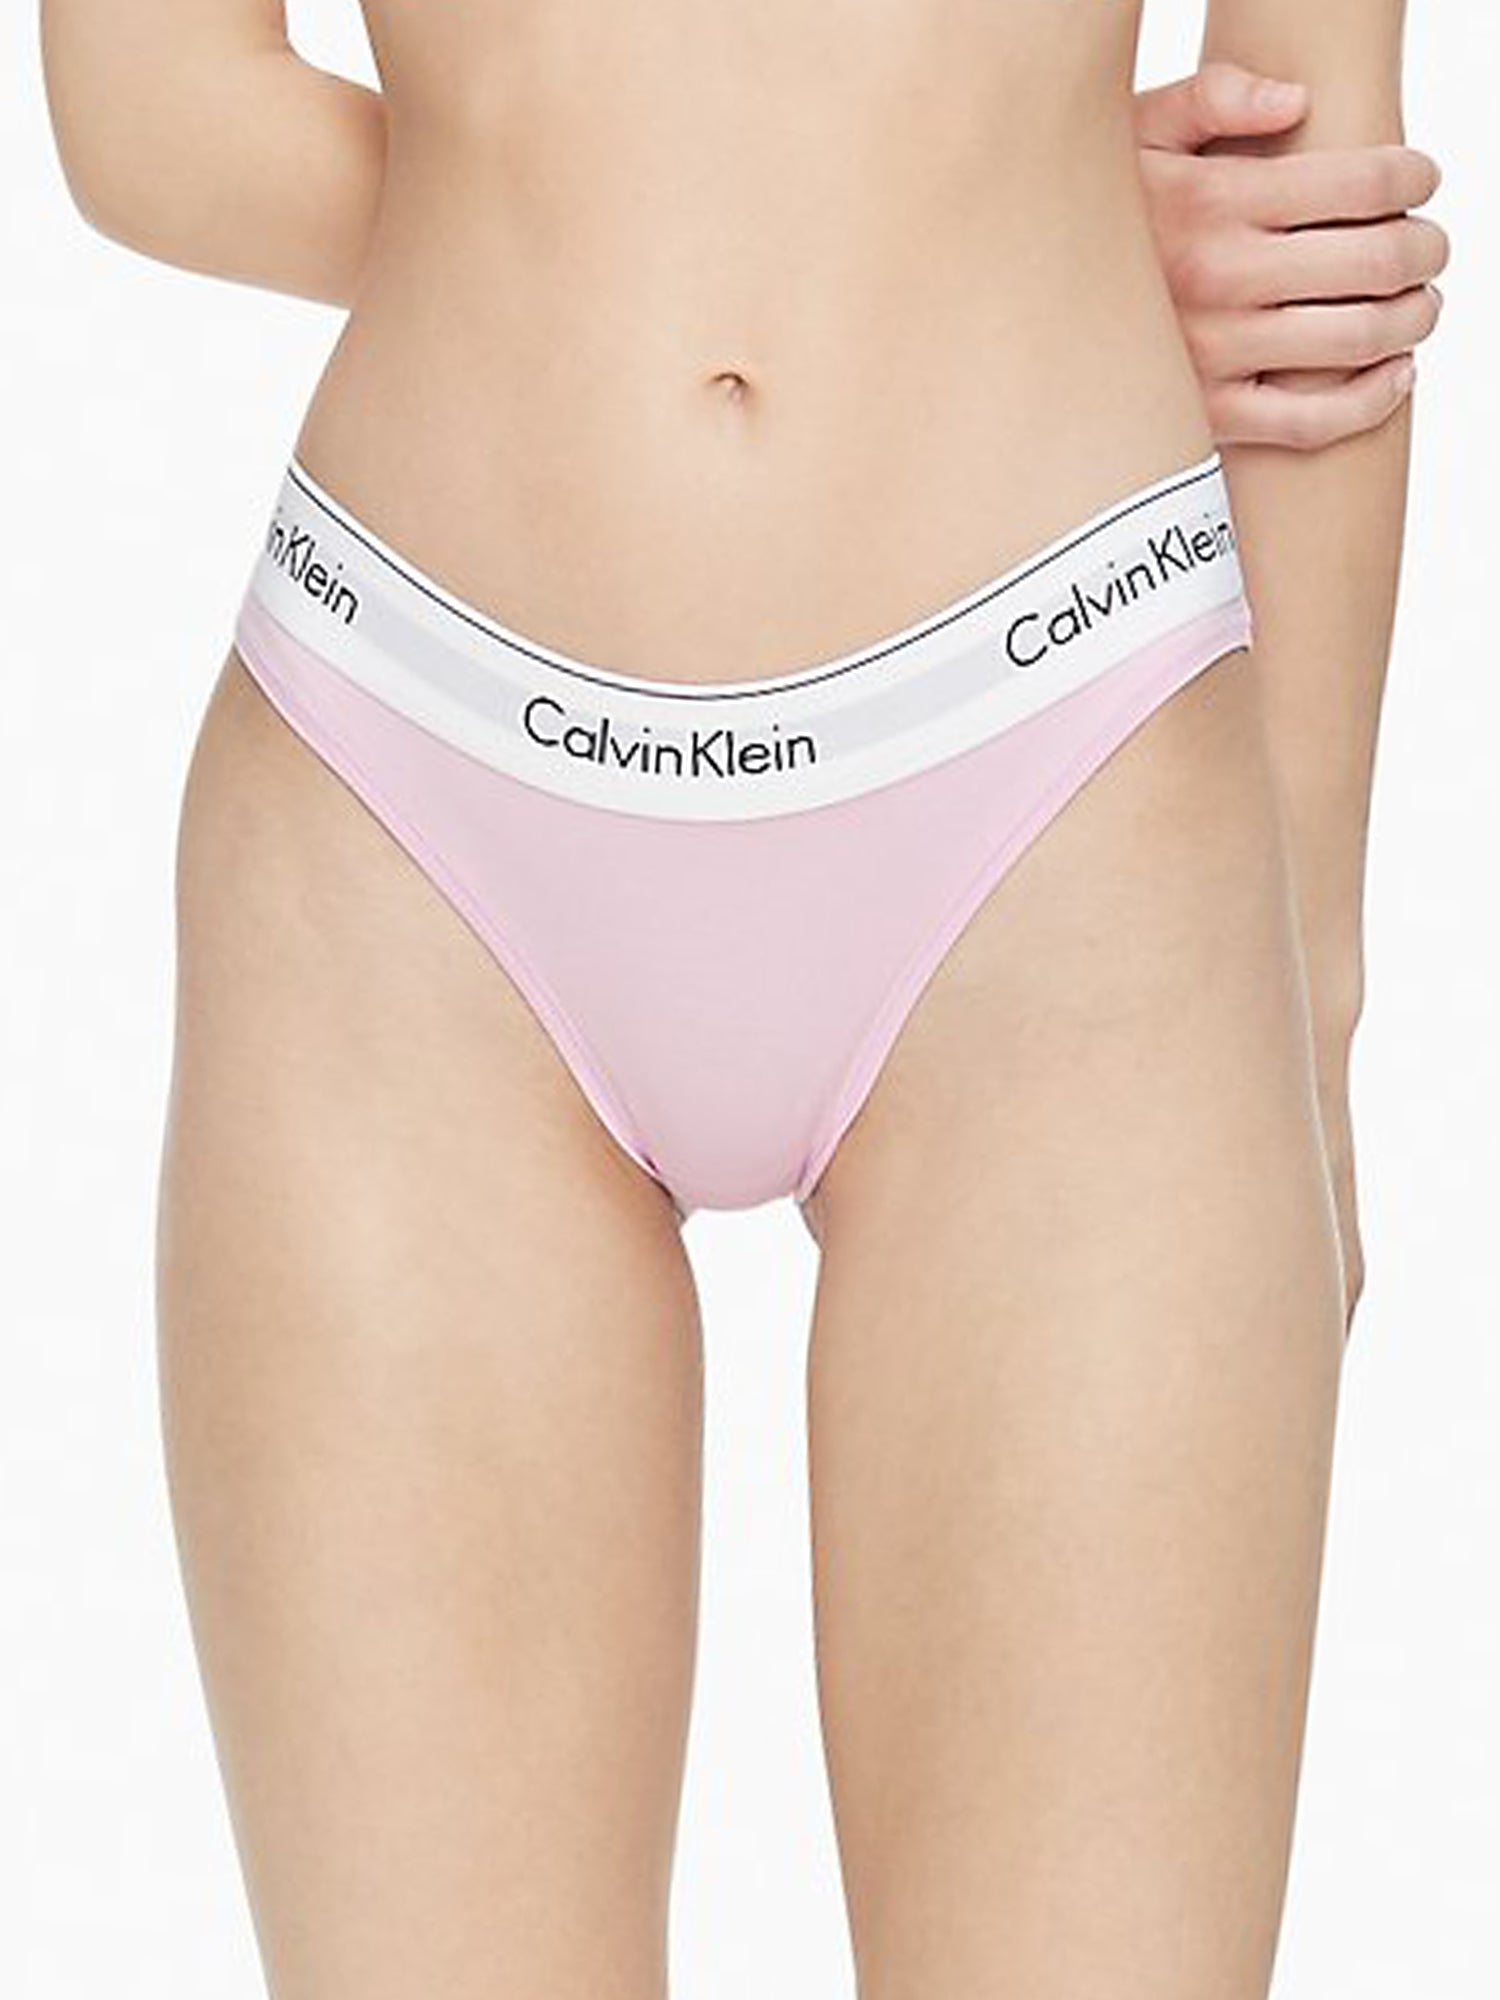 Calvin Klein Modern Cotton Bikini Grey F3787 - Free Shipping at